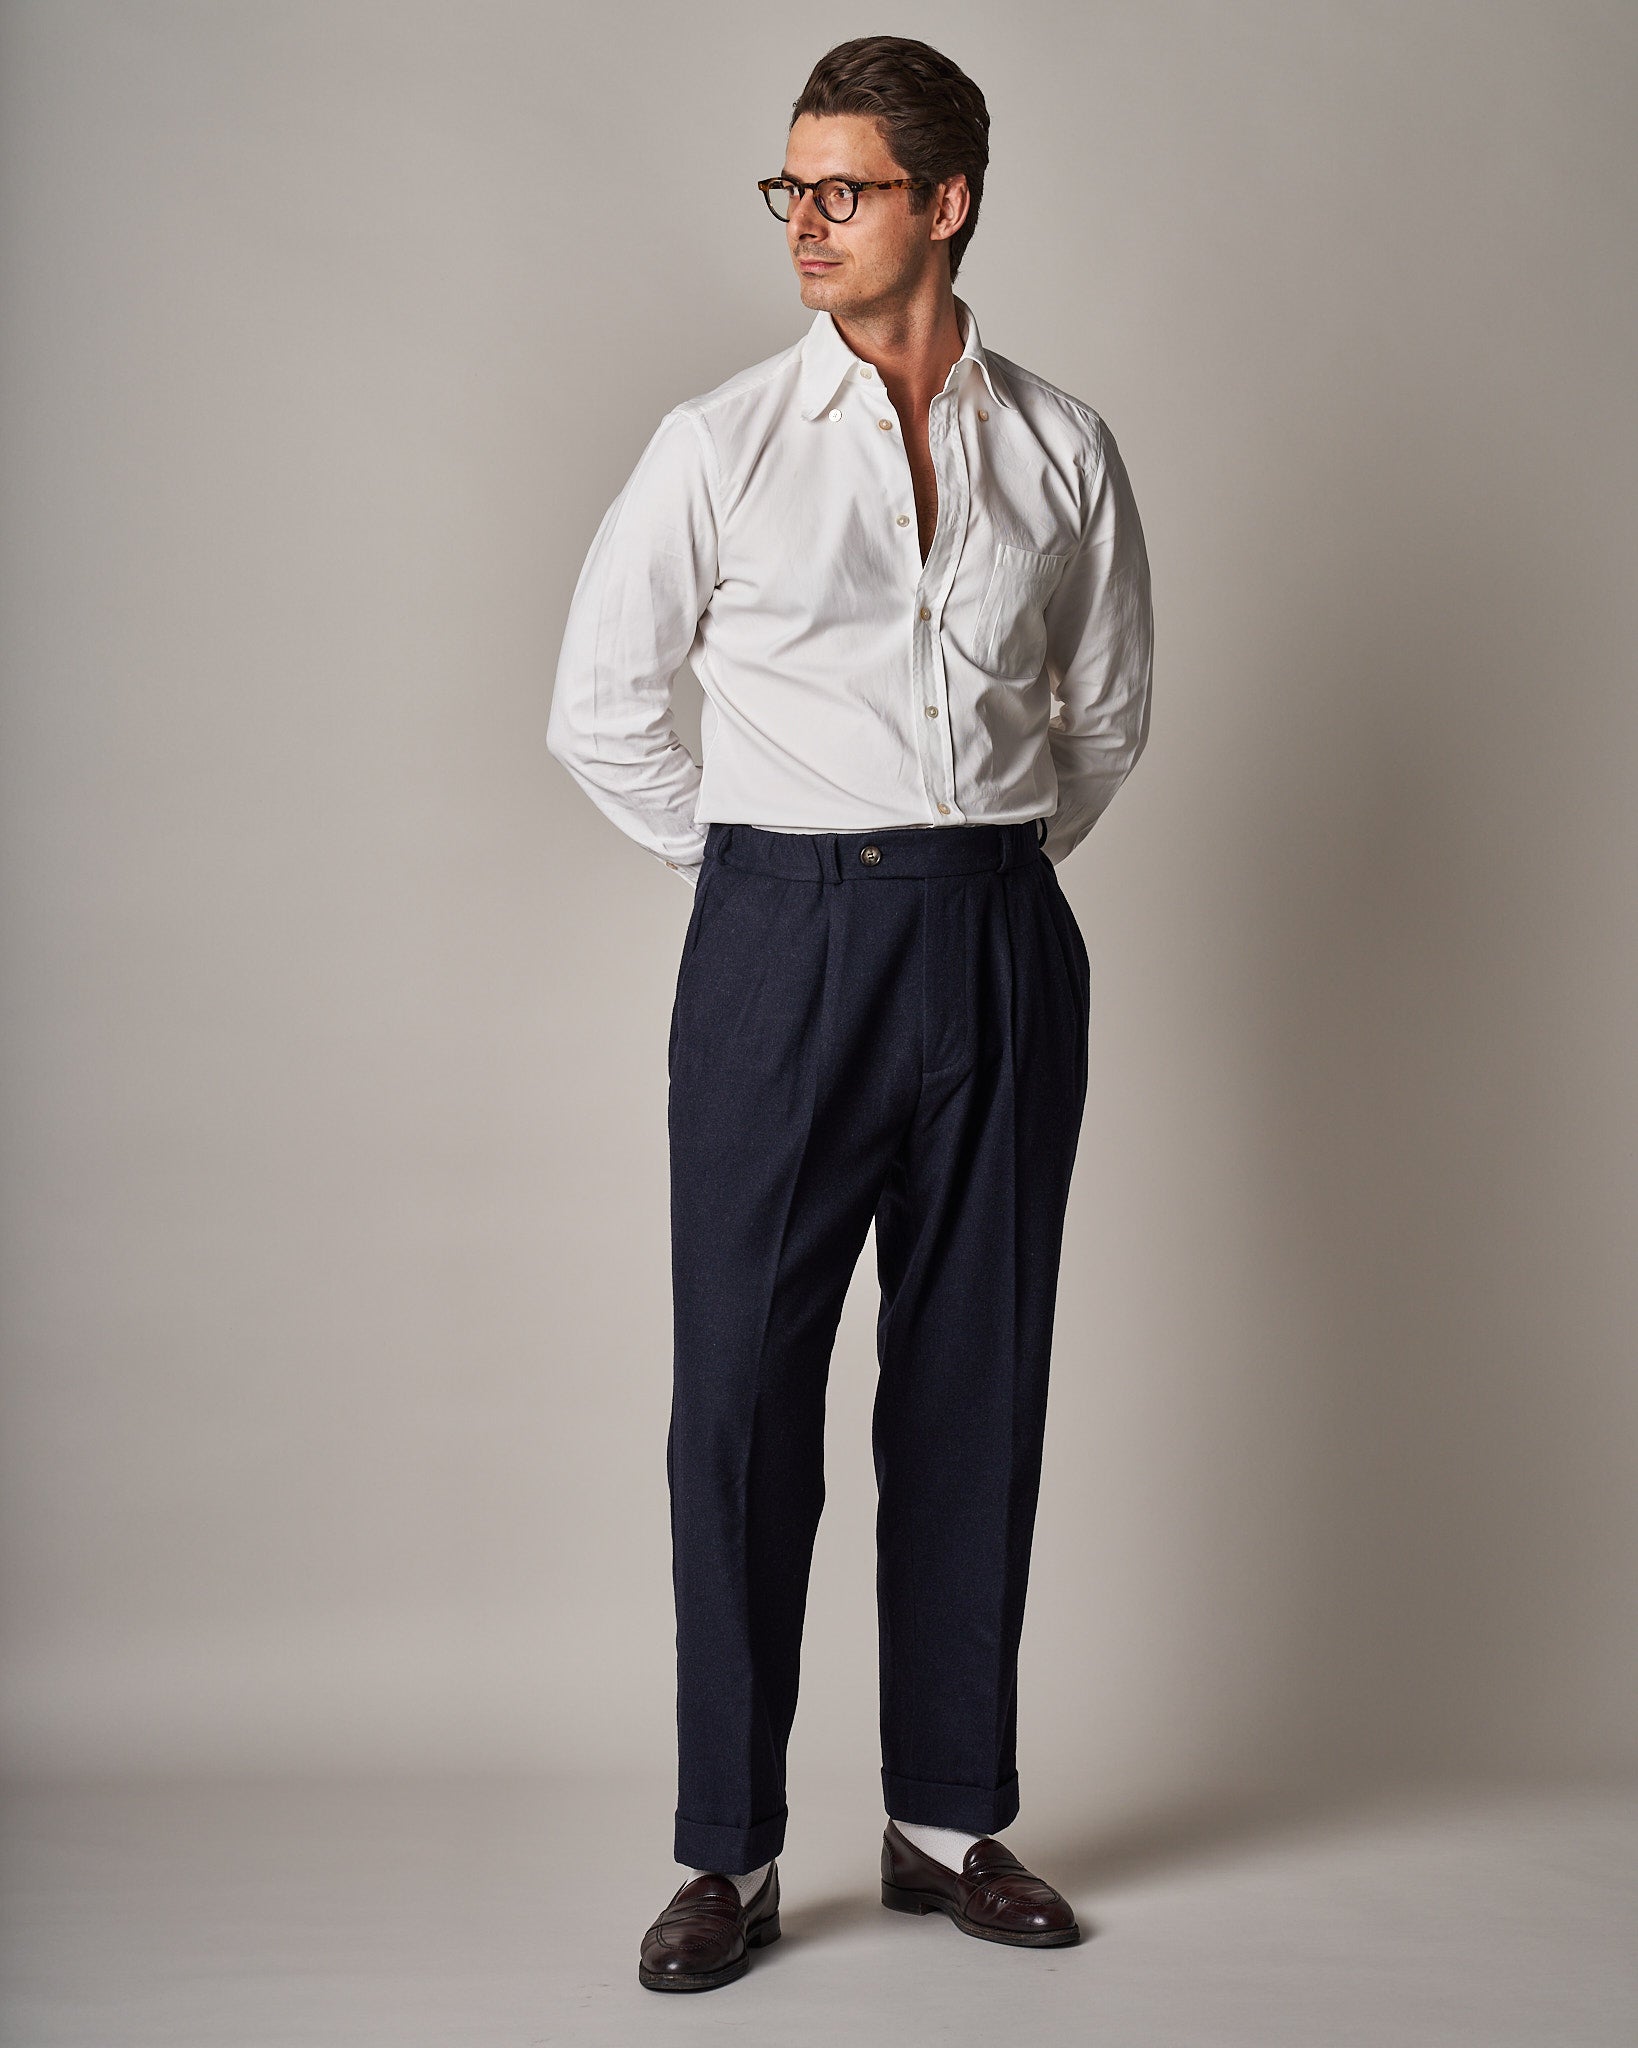 Men's Trousers Online | Gutteridge 1878 | Men's Trousers Sale